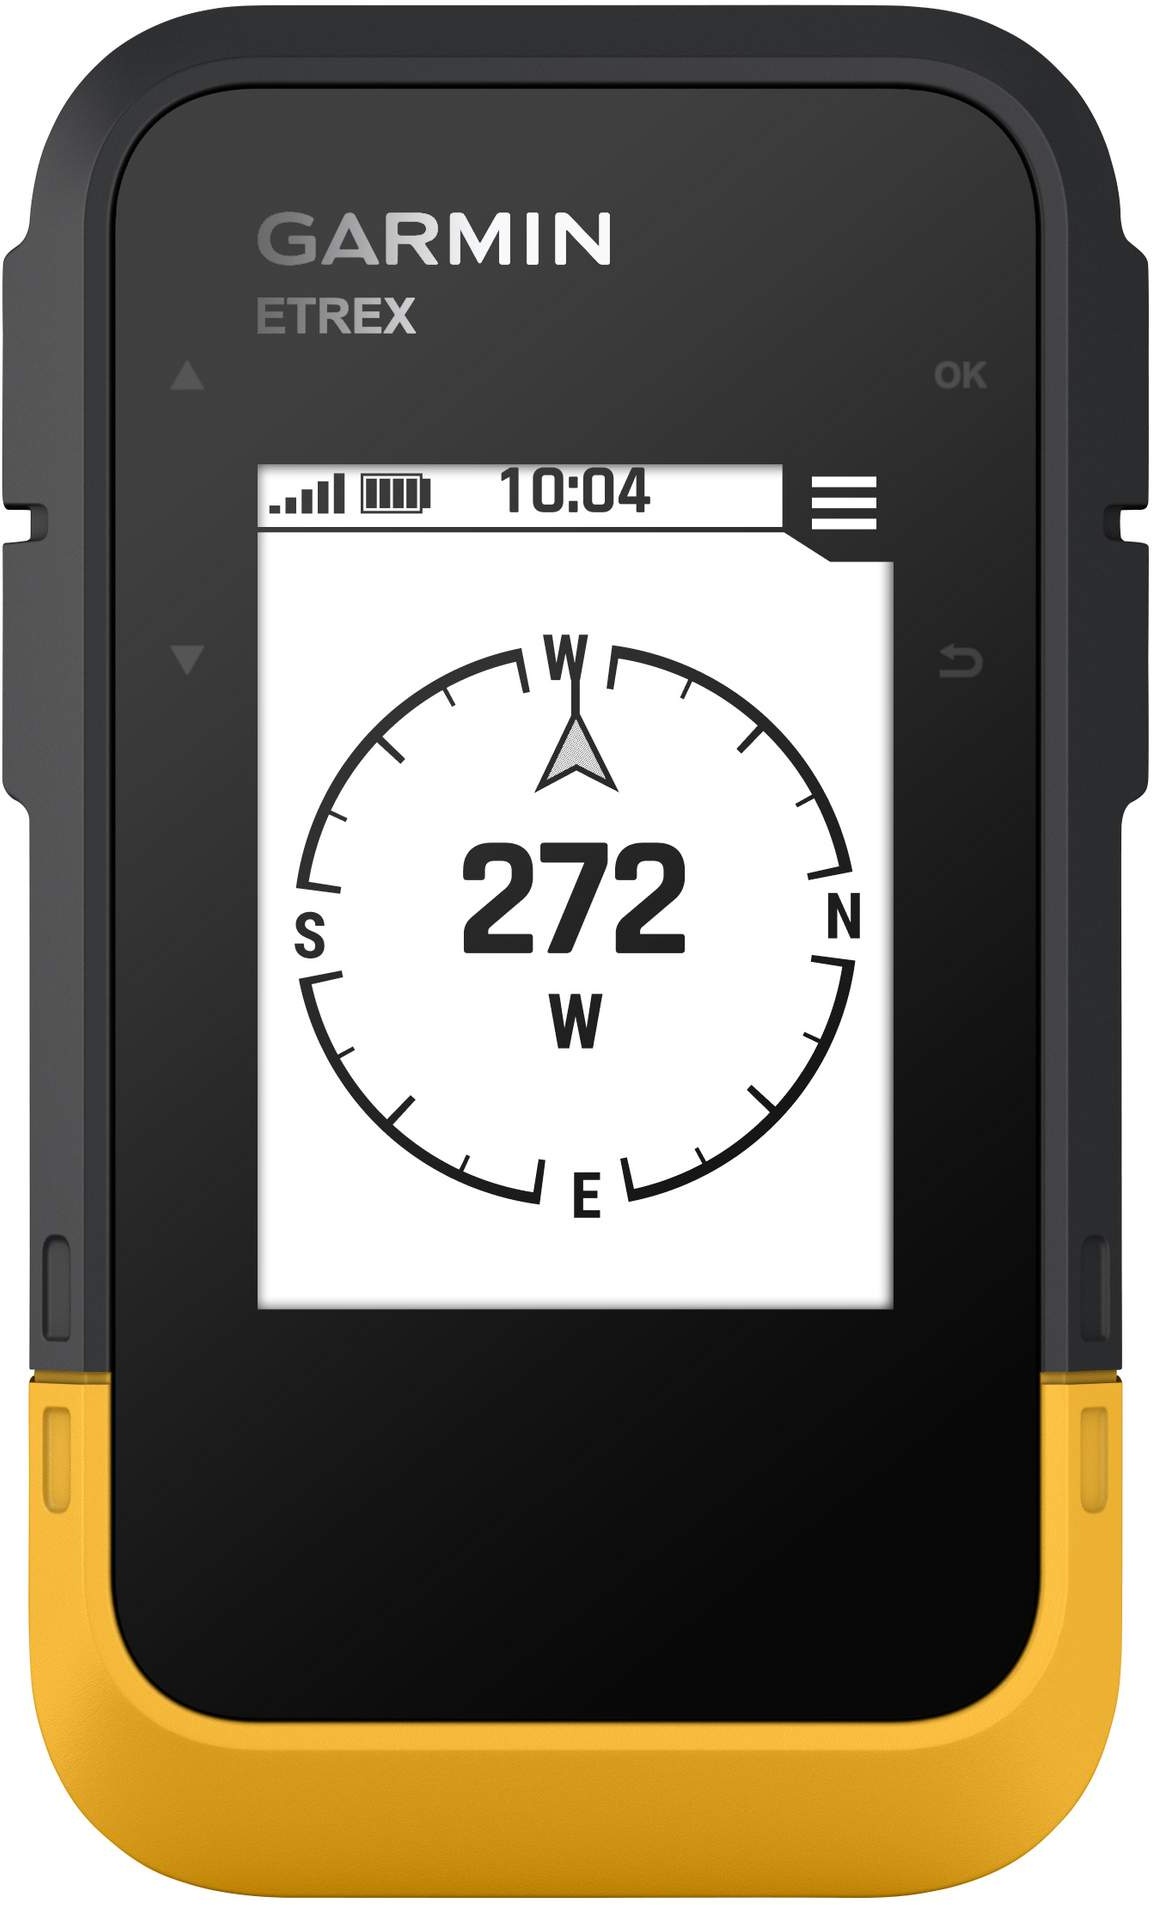 Garmin ETREX SE Gr.ONESIZE - GPS-Gerät - schwarz